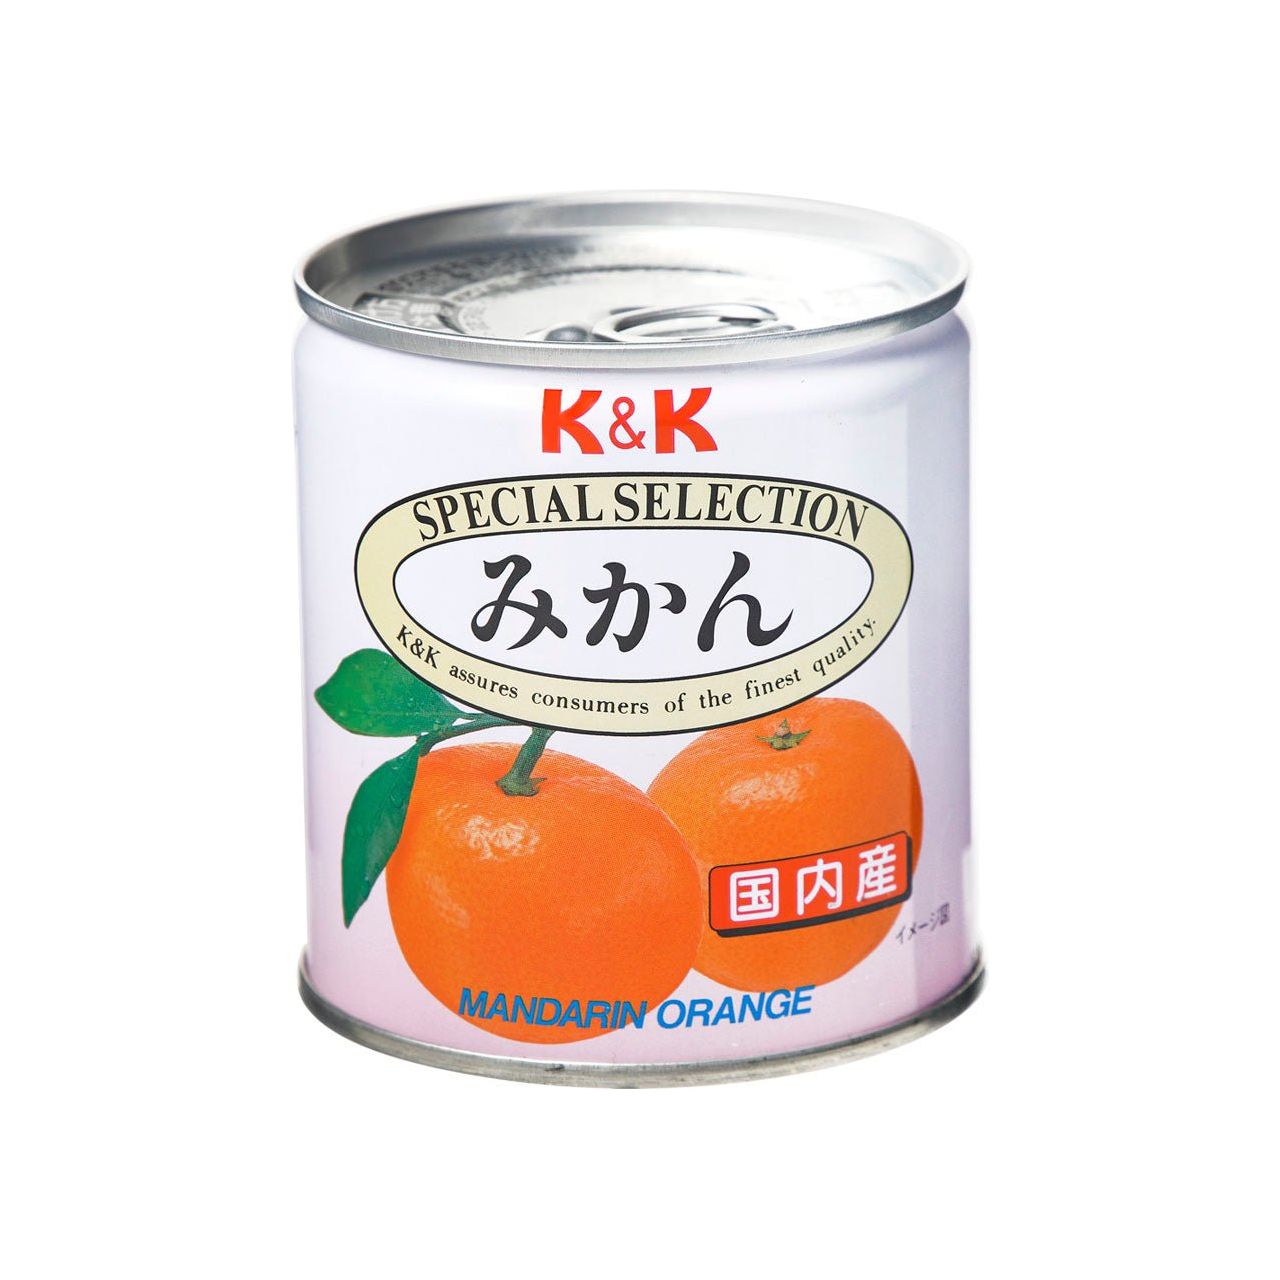 K & K Mandarin Oranges (작은)